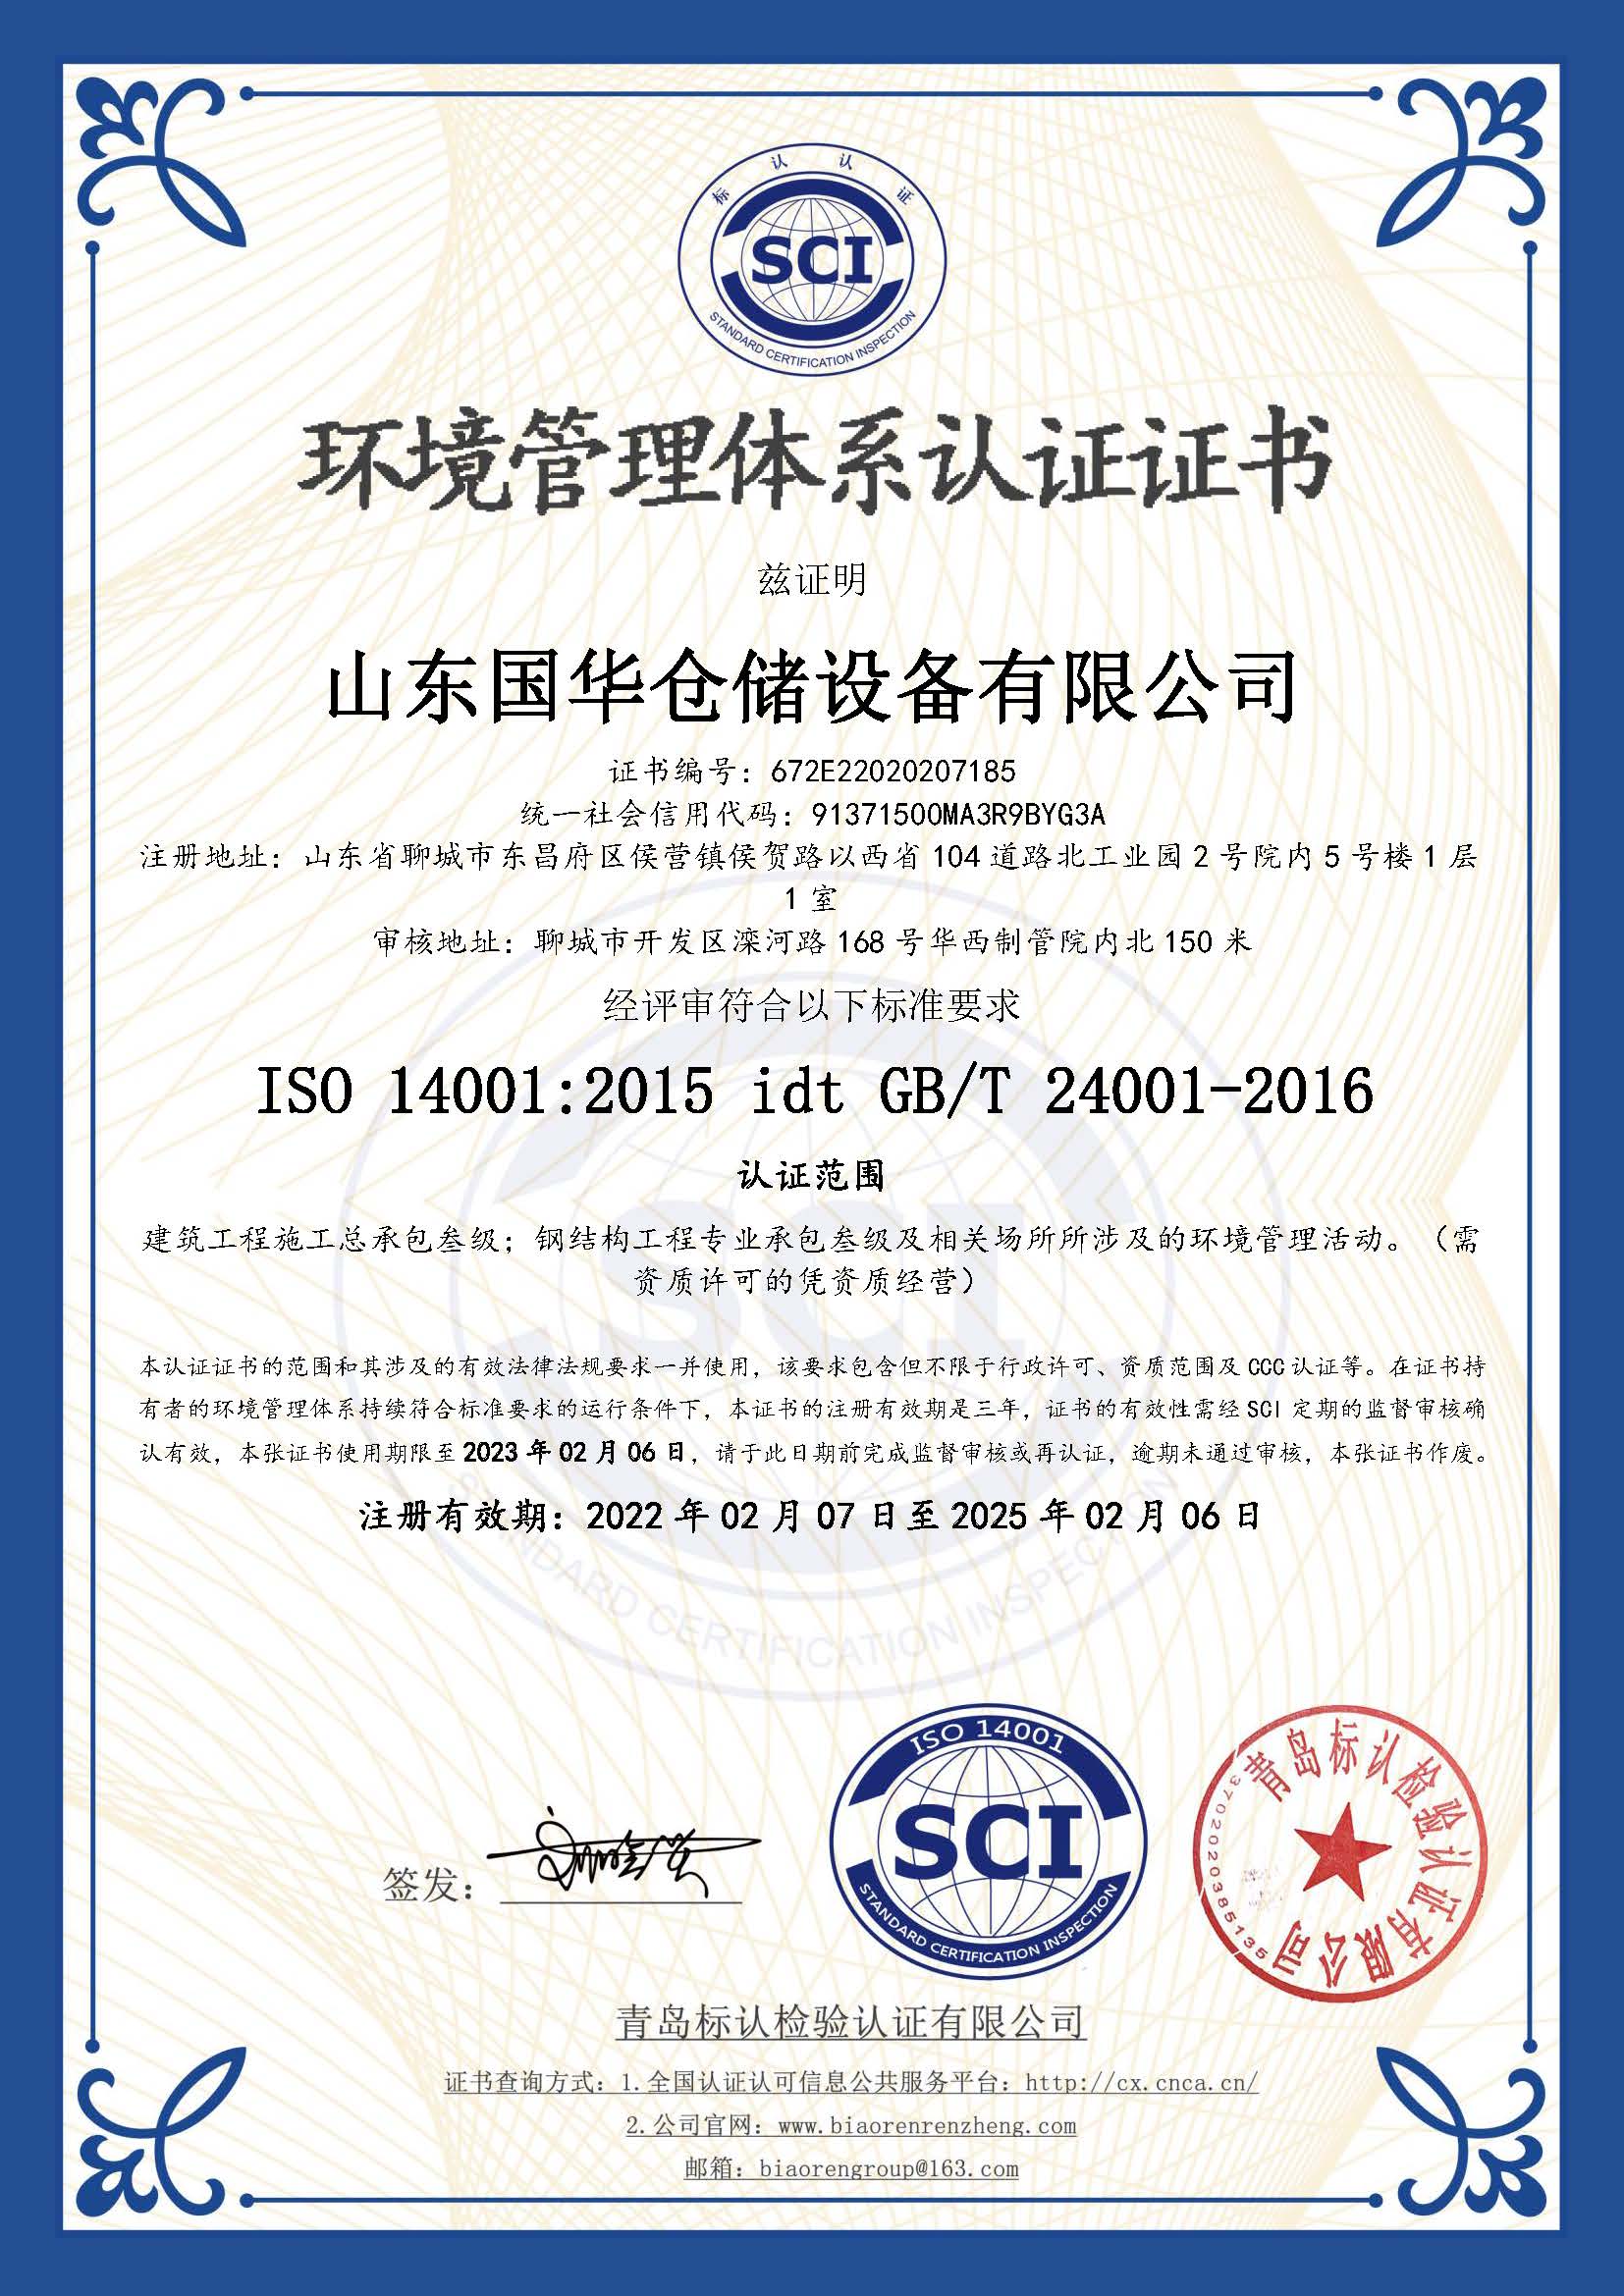 佛山钢板仓环境管理体系认证证书